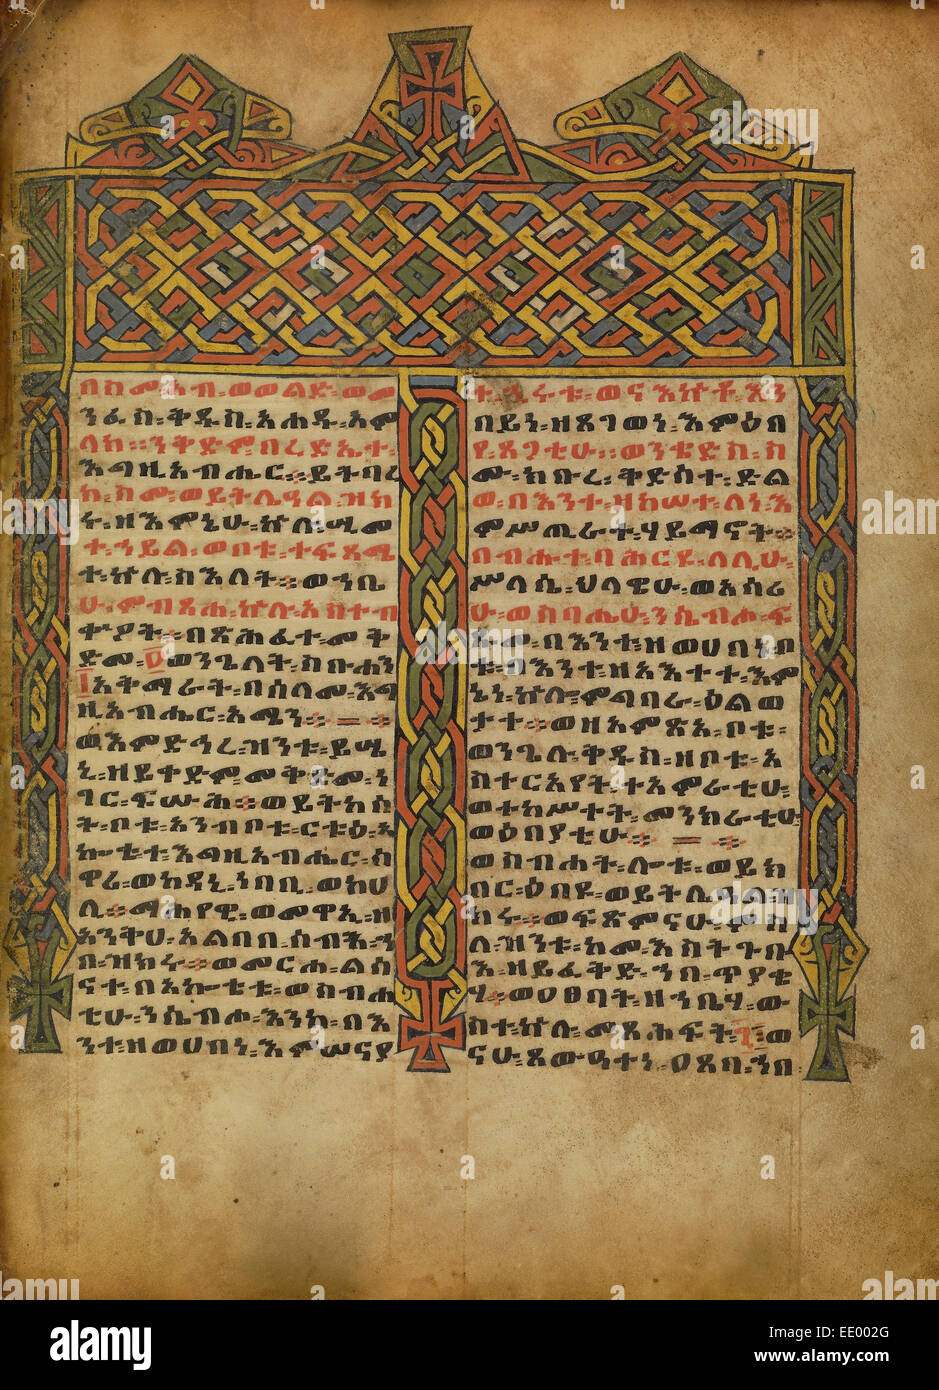 Dekorierte Incipit Seite; Unbekannt; Äthiopien, Afrika; etwa 1480-1520; Tempera auf Pergament Stockfoto